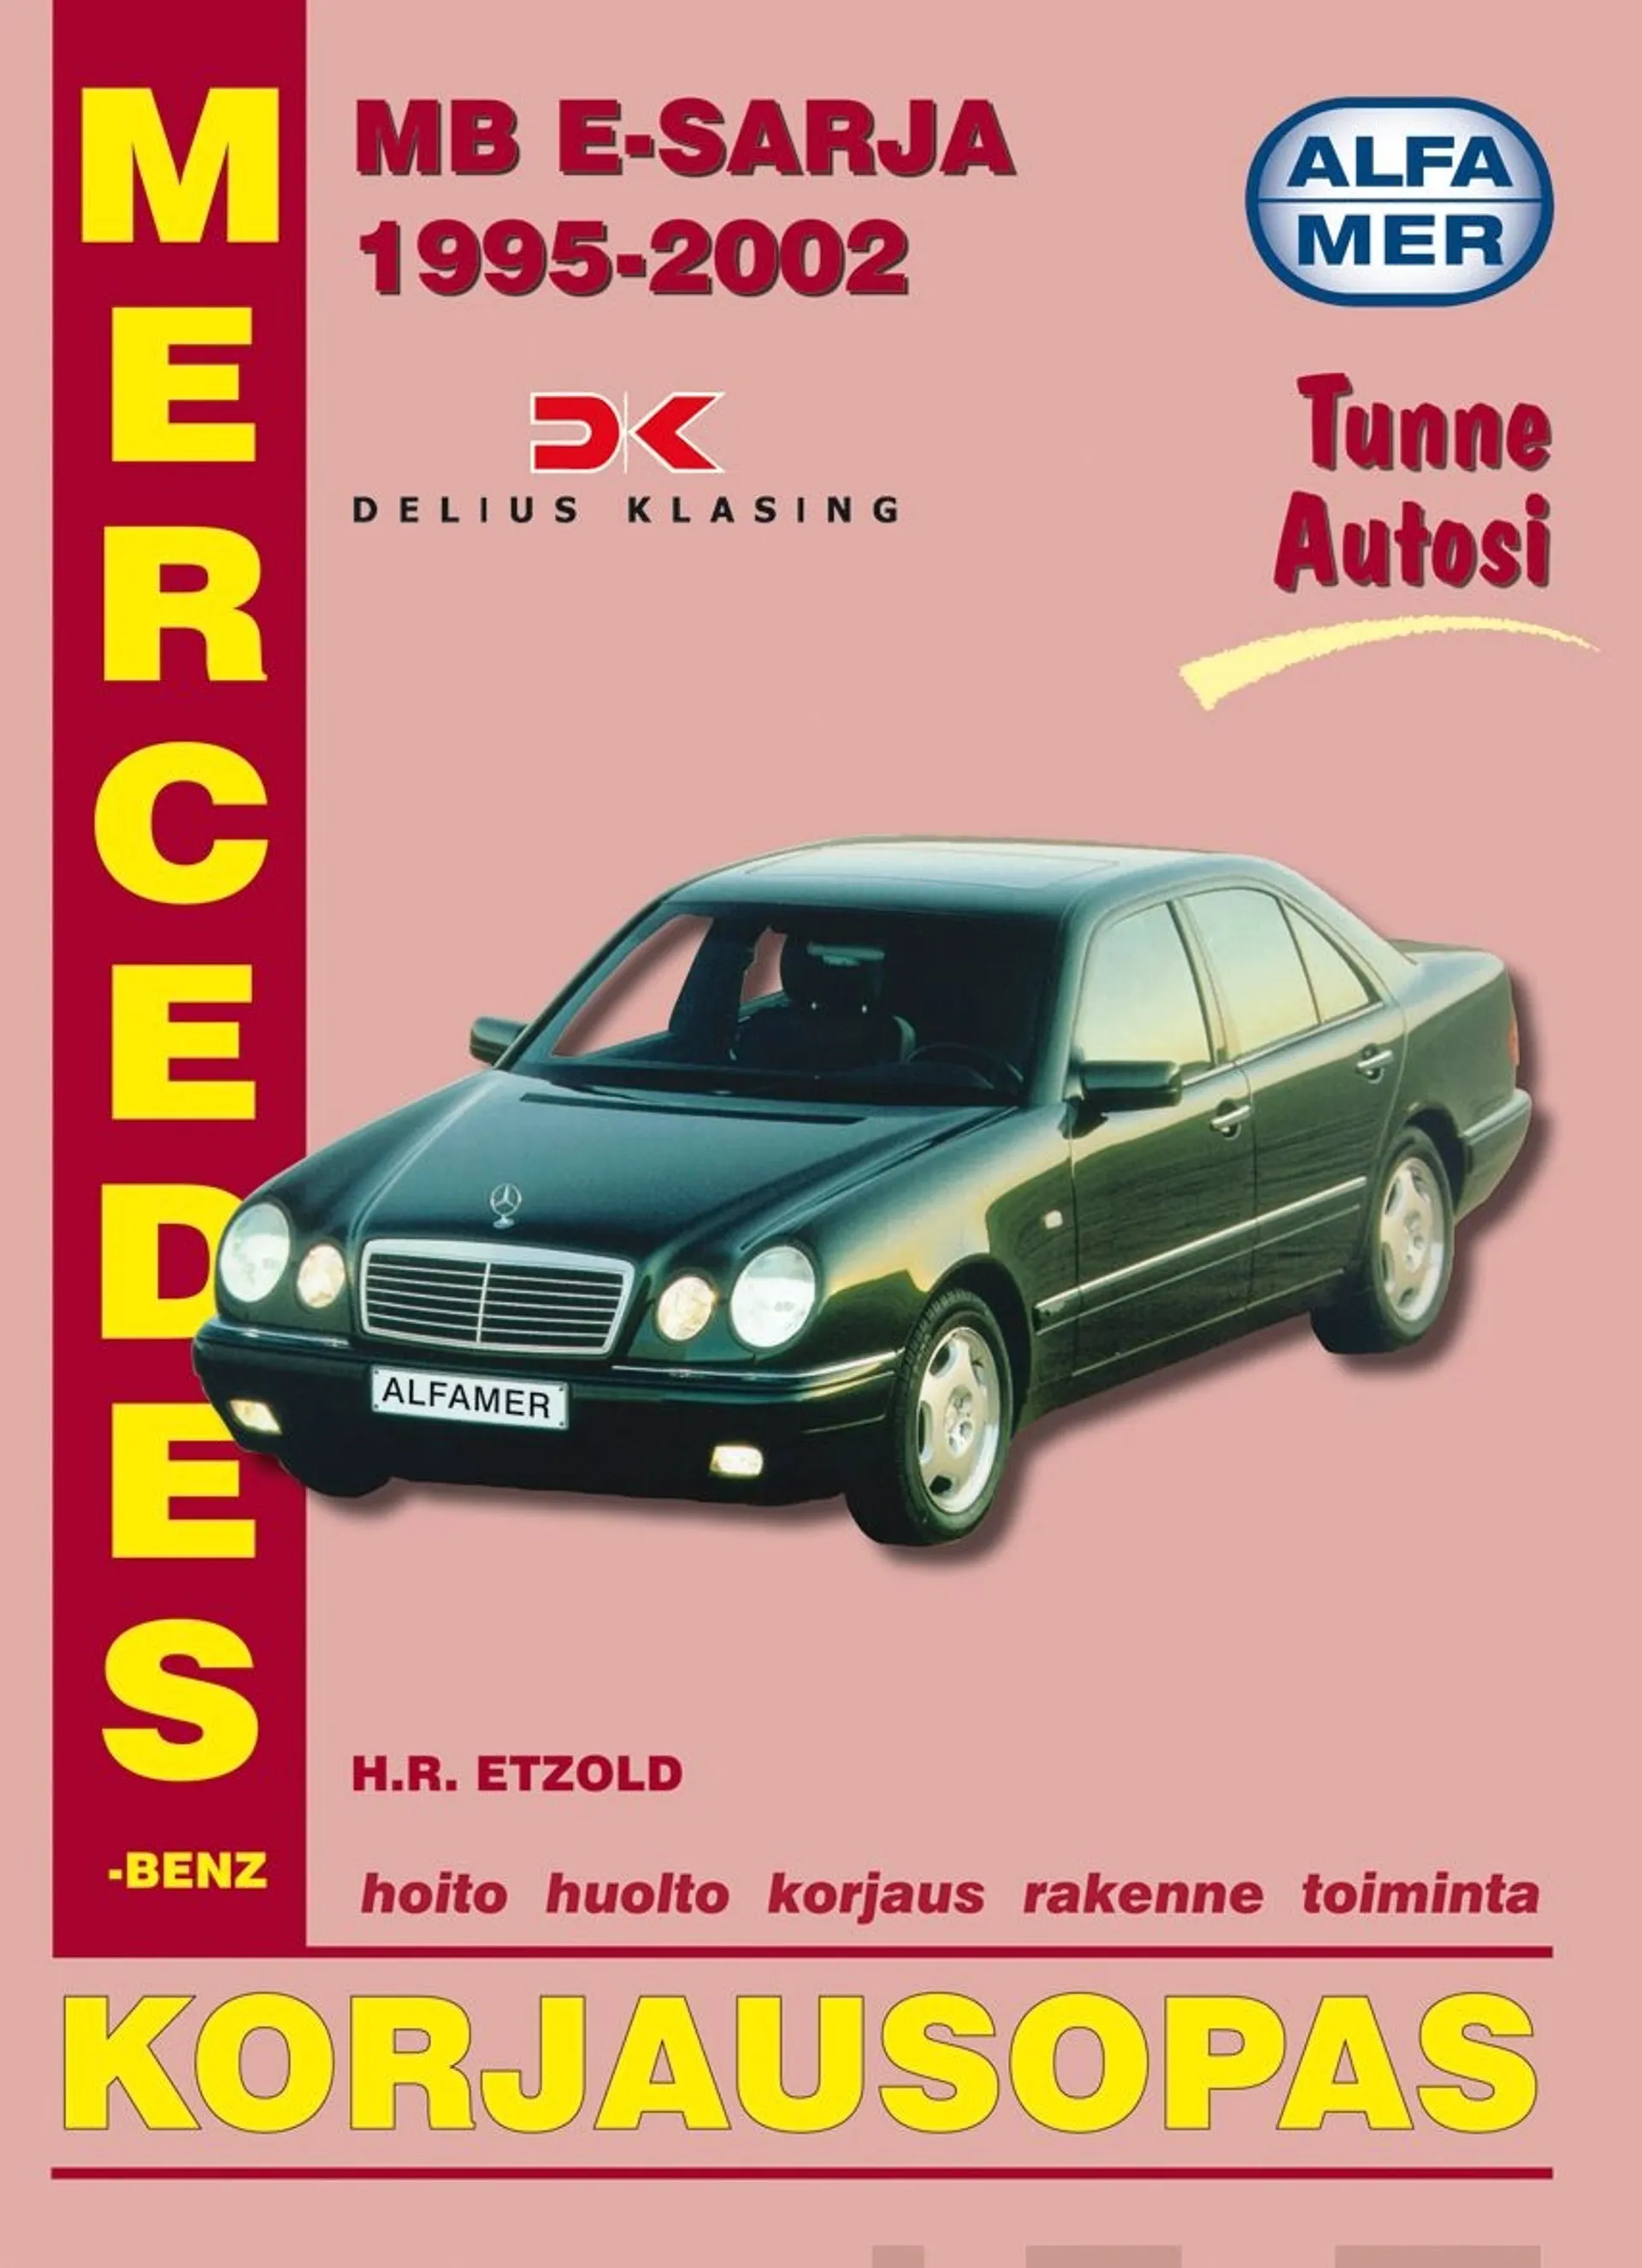 Mercedes-Benz E-sarja 1995-2002 - korjausopas